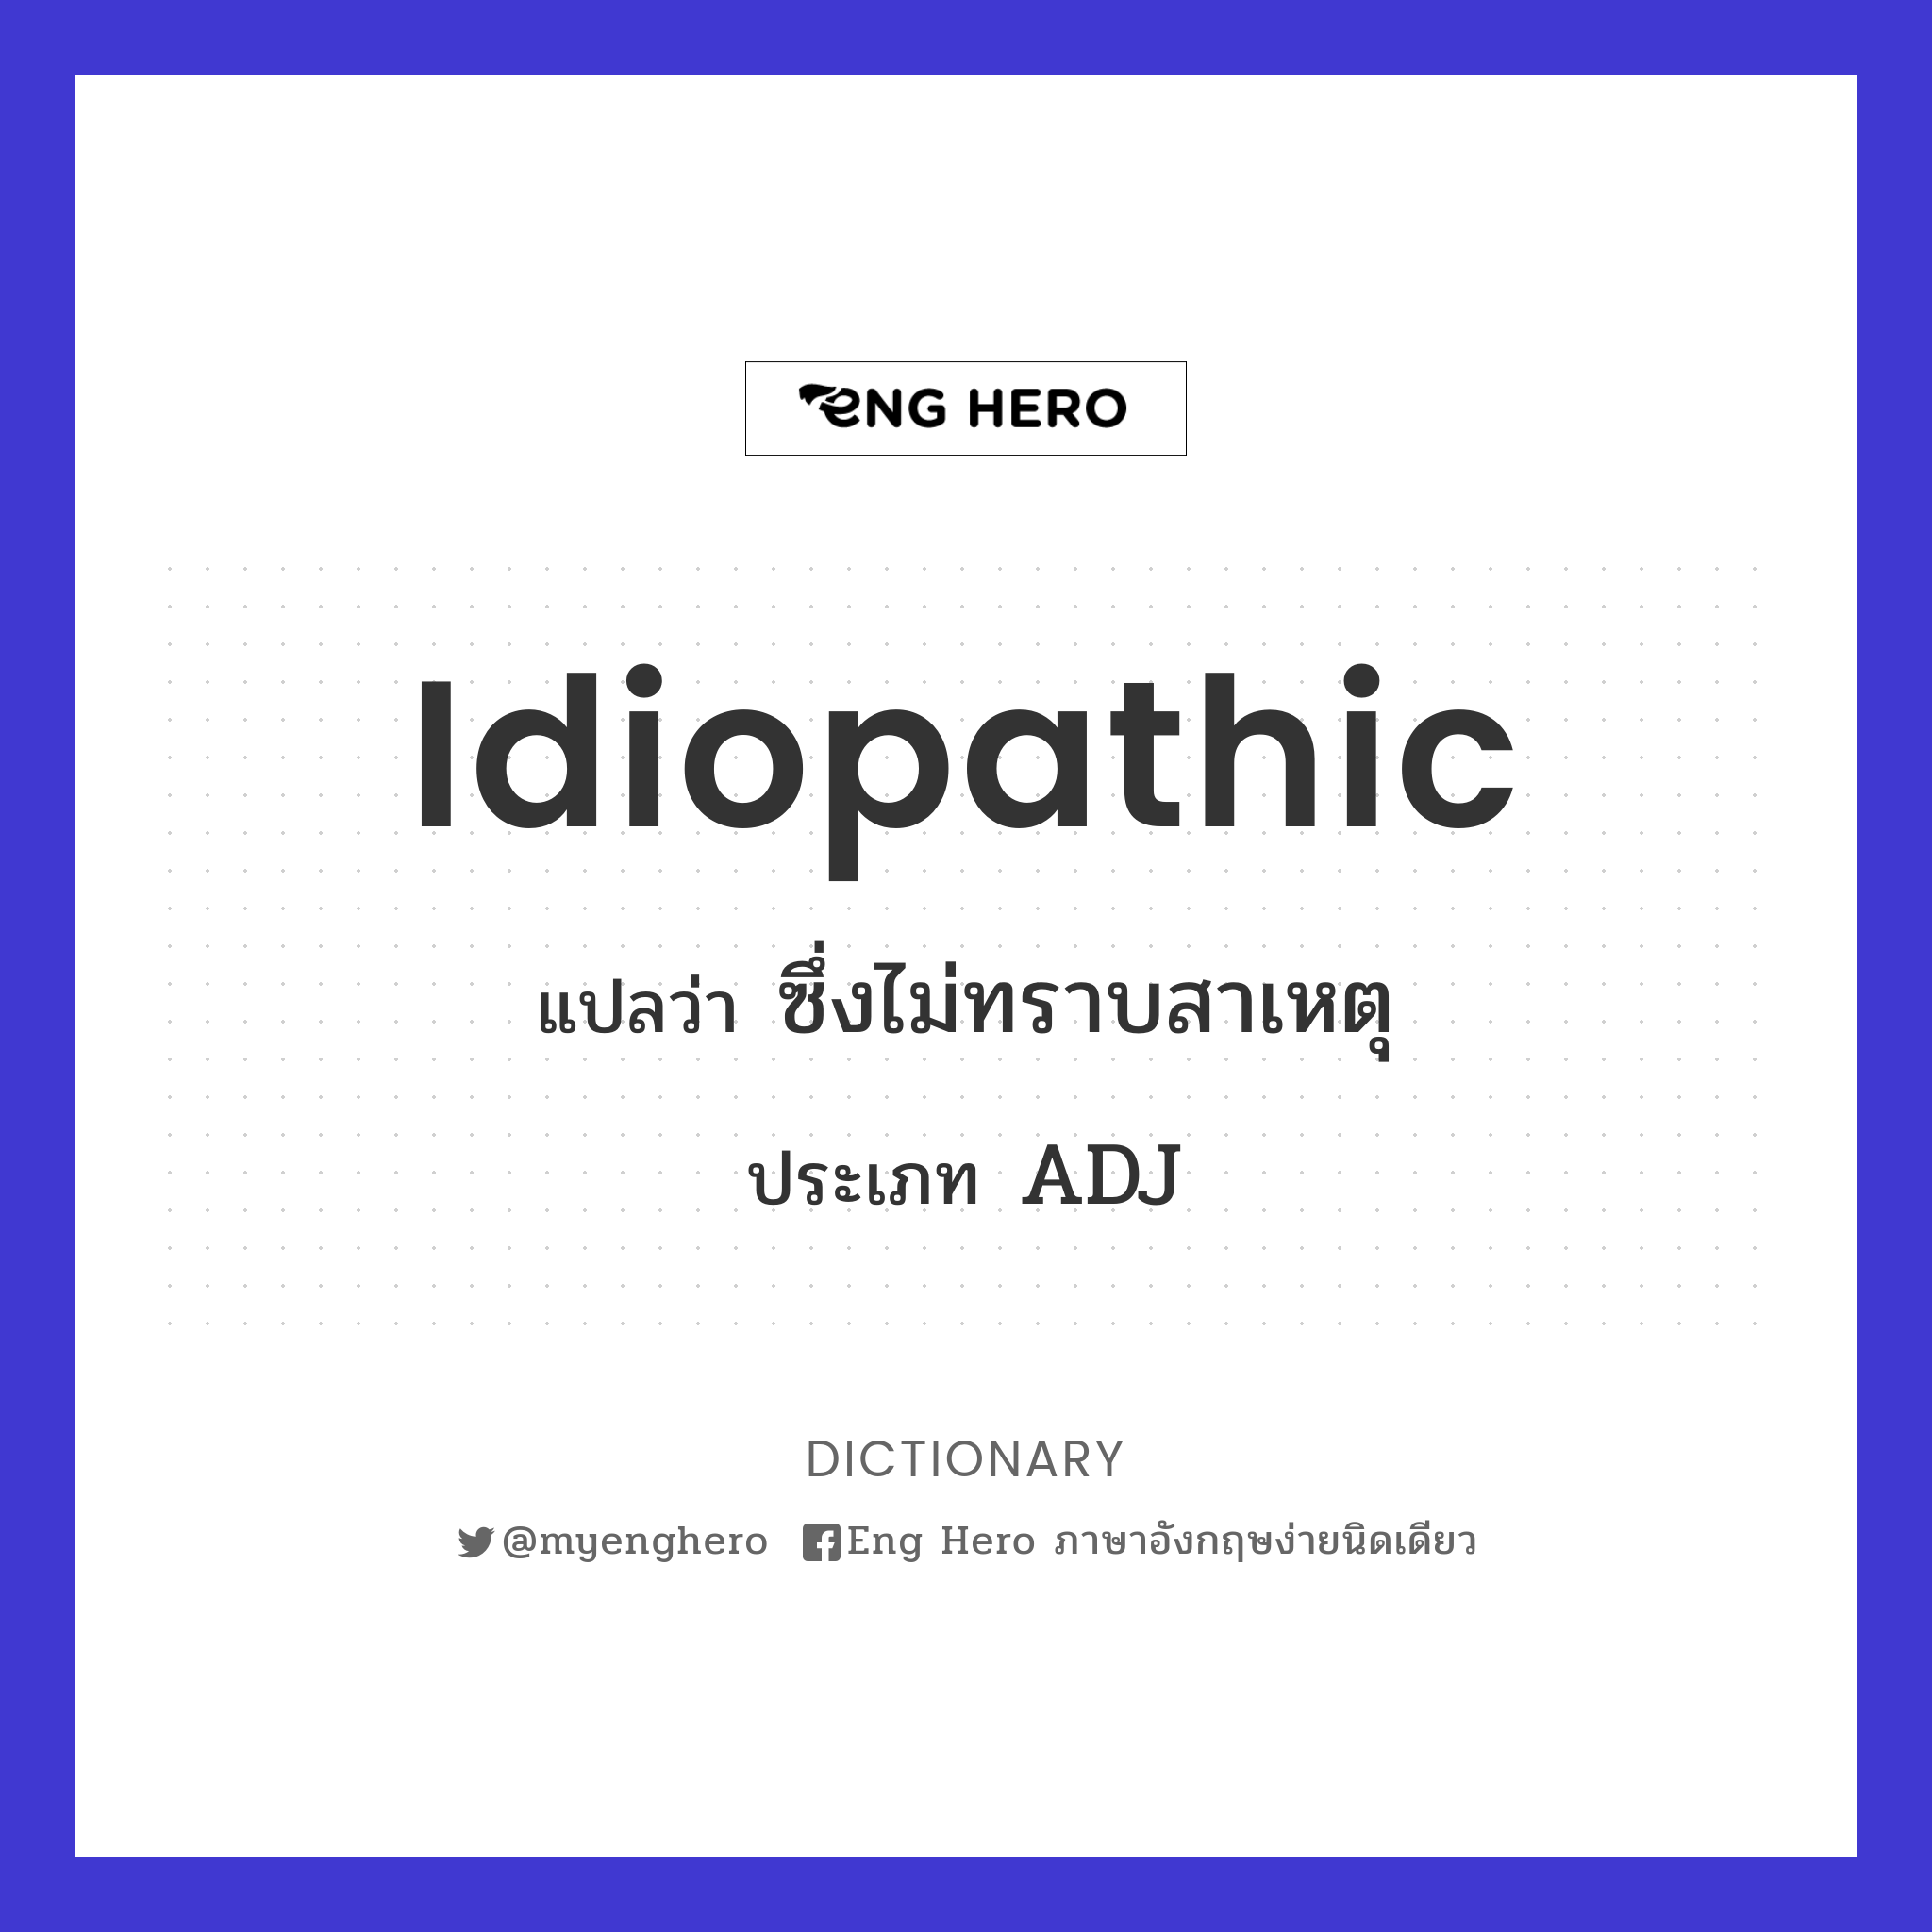 idiopathic